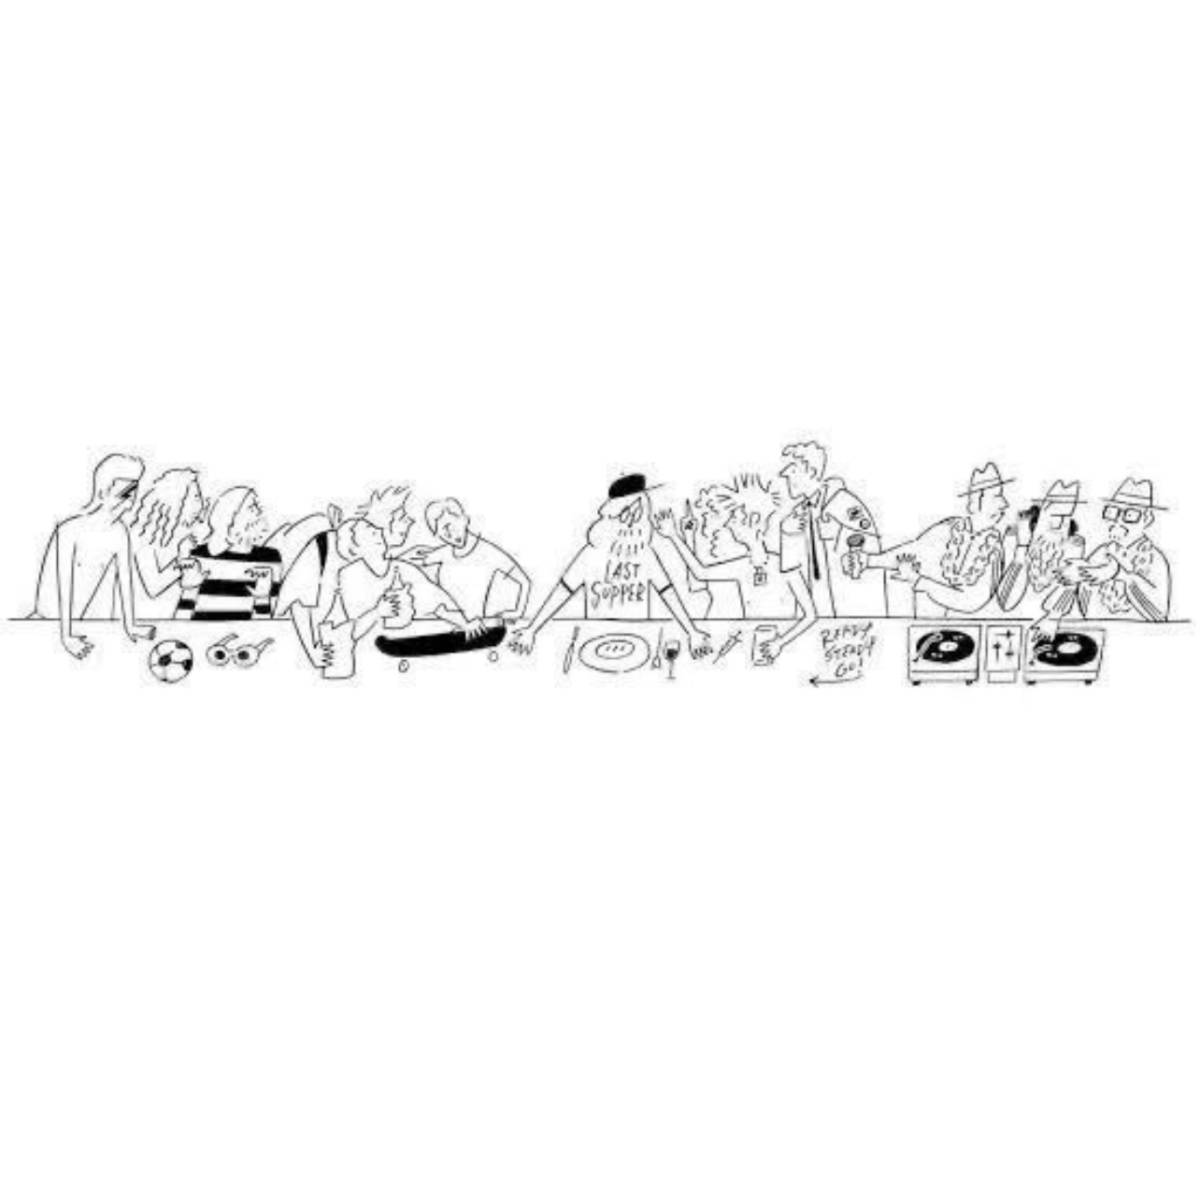 長場雄 NAGABA YU The Last Supper SAI ポスター シルクスクリーン 版画 絵画 未使用(新品)のヤフオク落札情報